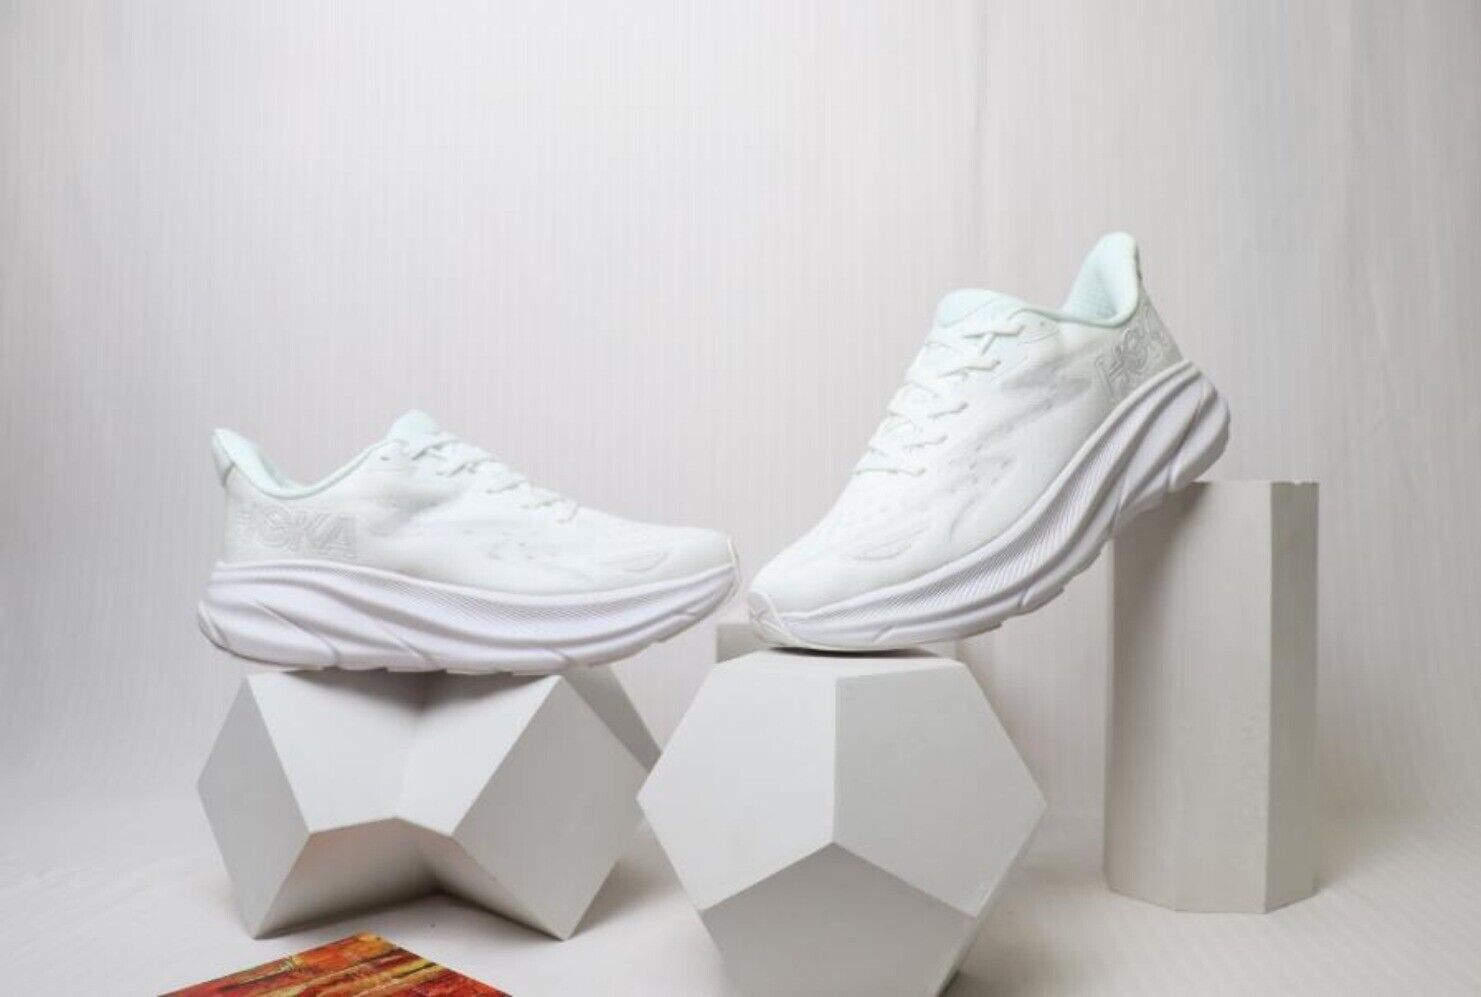 NEW HOKA ONE ONE Clifton 9 Running Shoes in Full White for Women/Men - 1127895